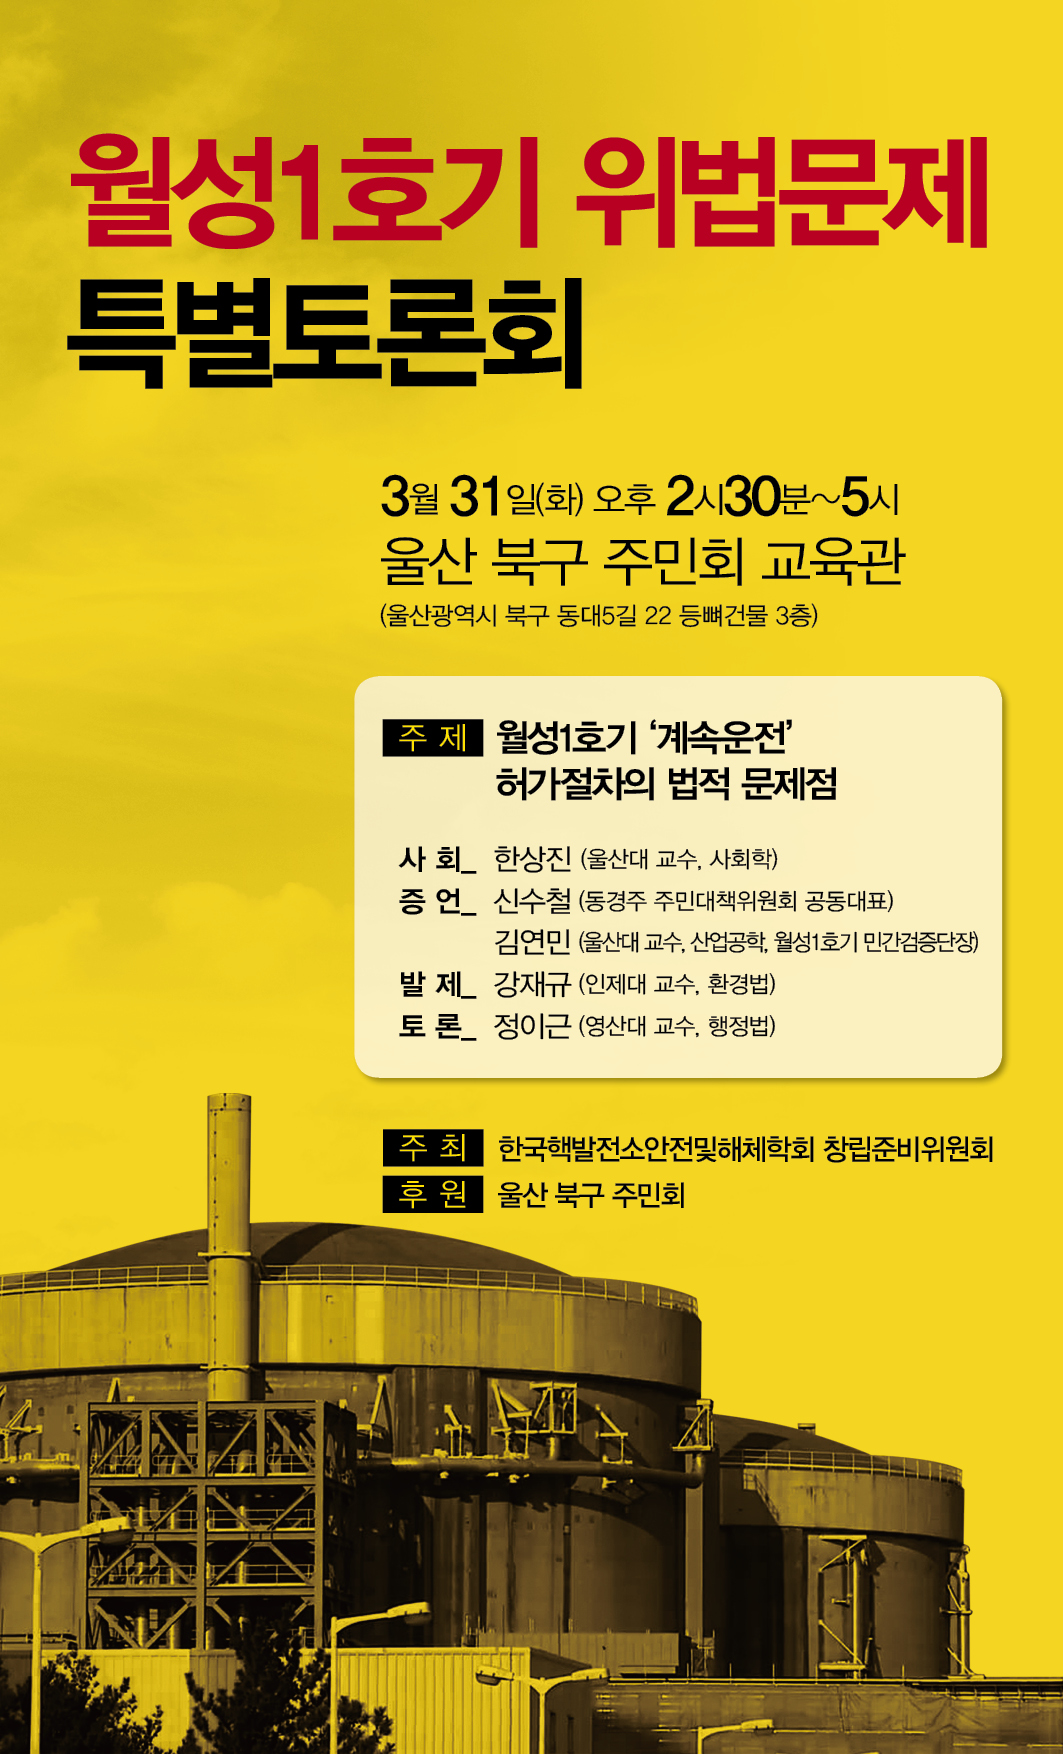 2015-0323 탈핵에너지 교수모임웹자보수정2.jpg